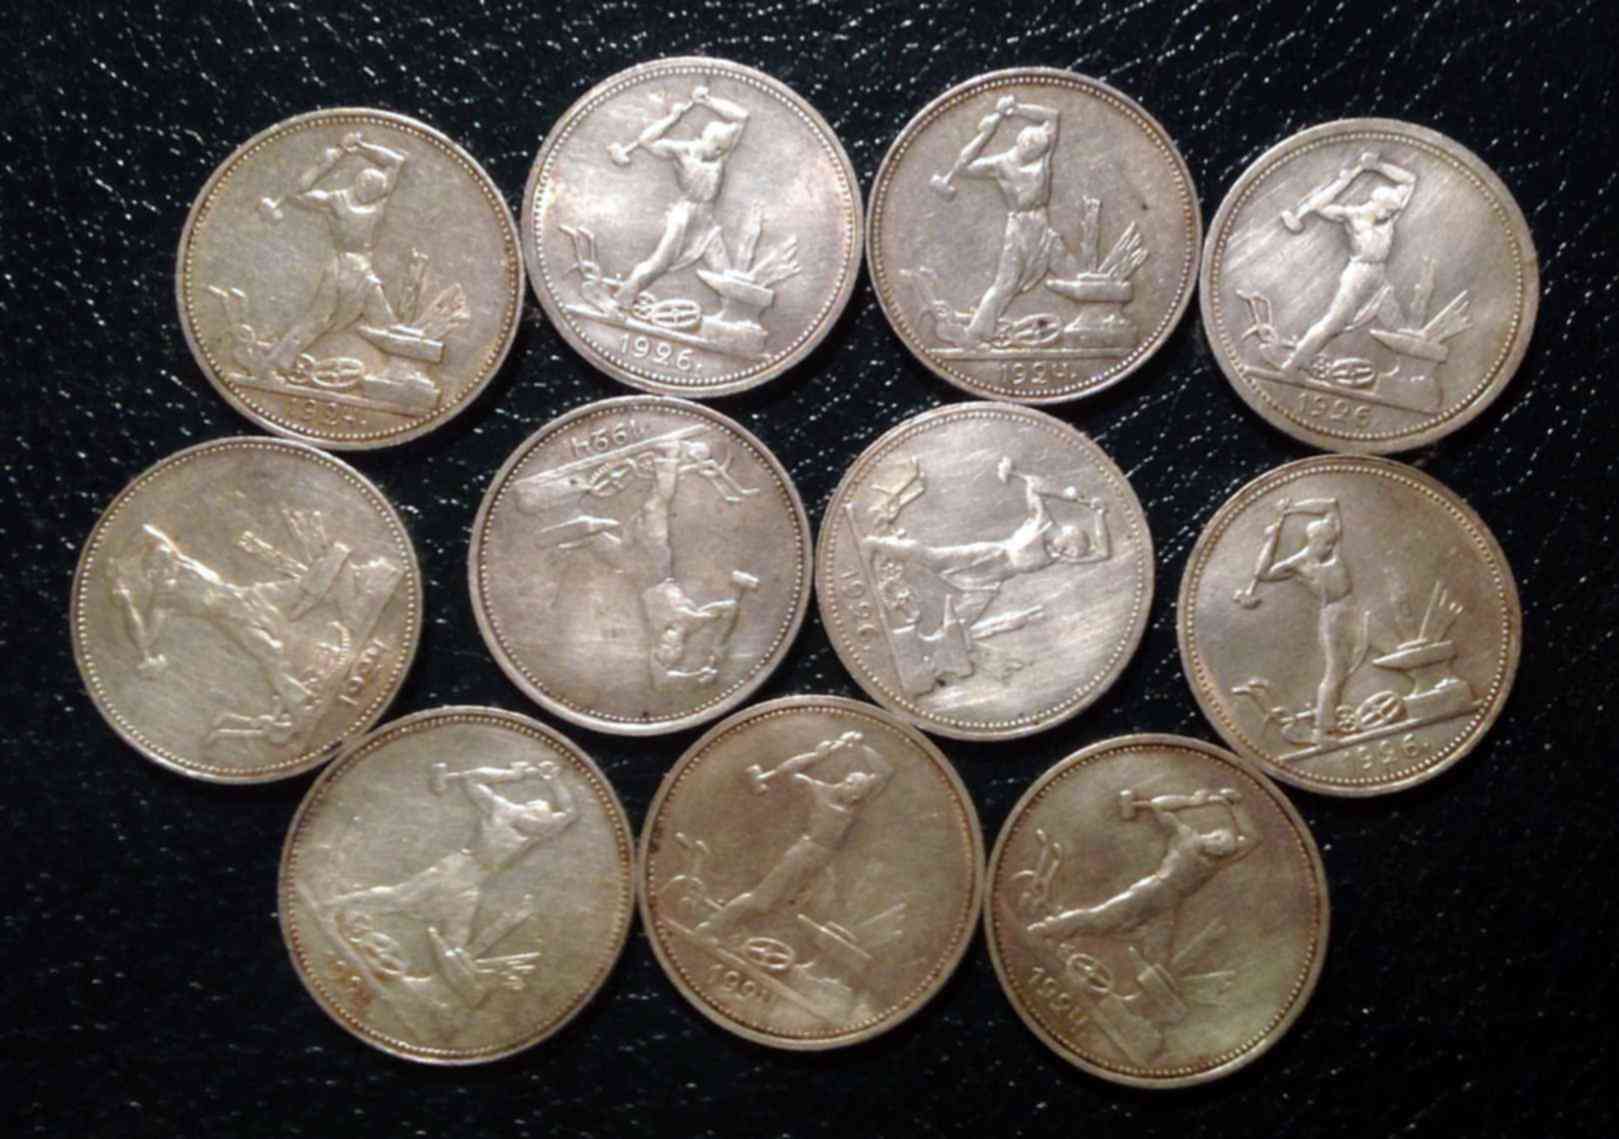 Советские серебряные монеты